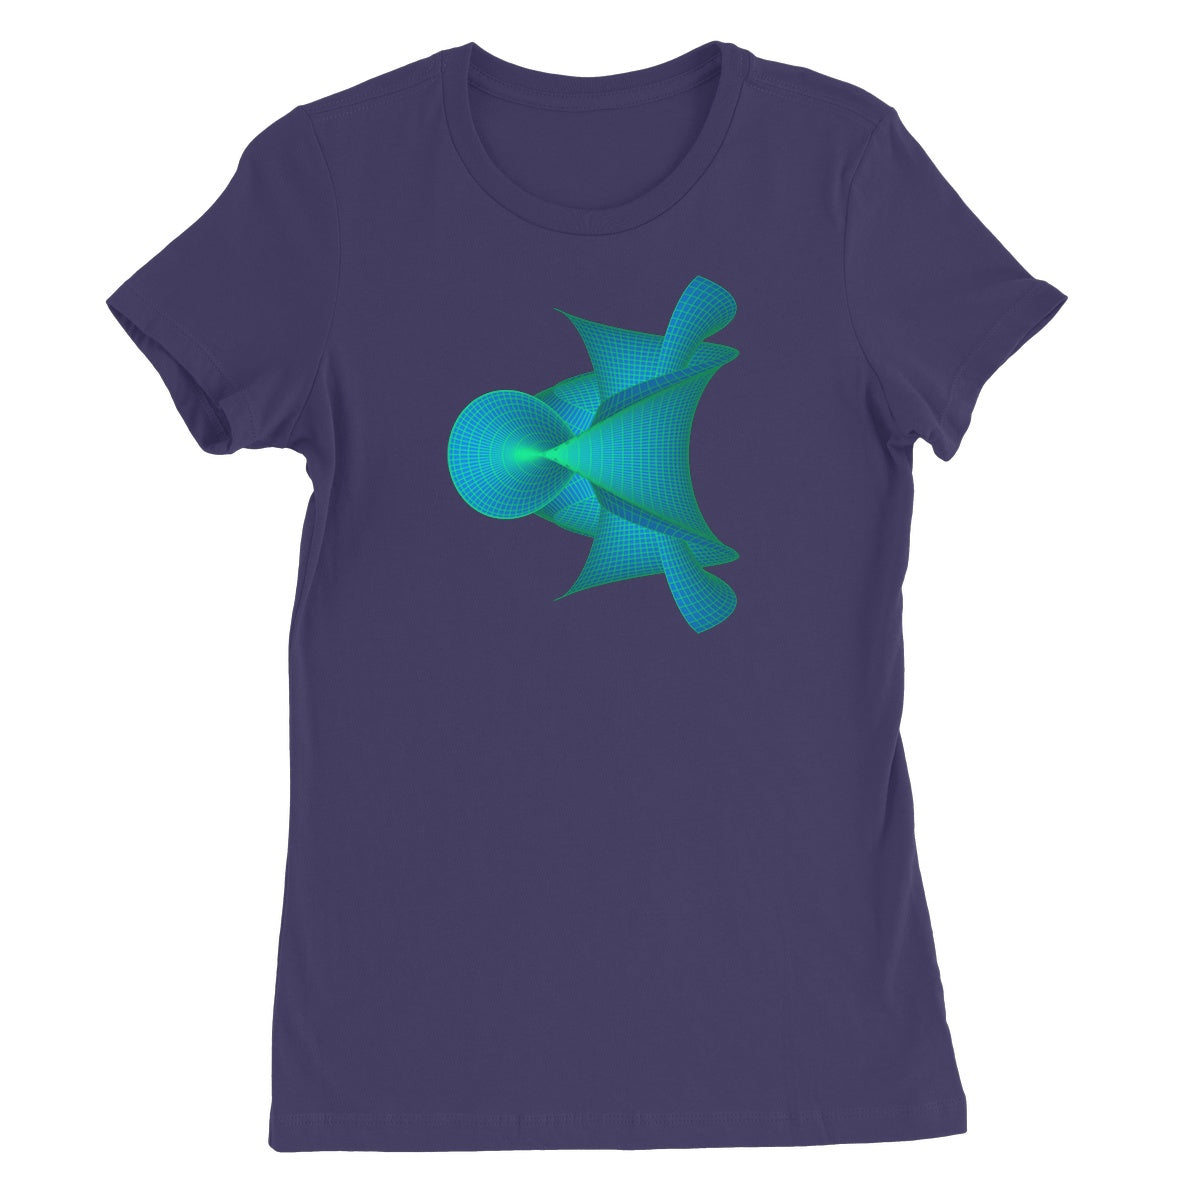 Kuen's Surface, Aqua Women's Favourite T-Shirt